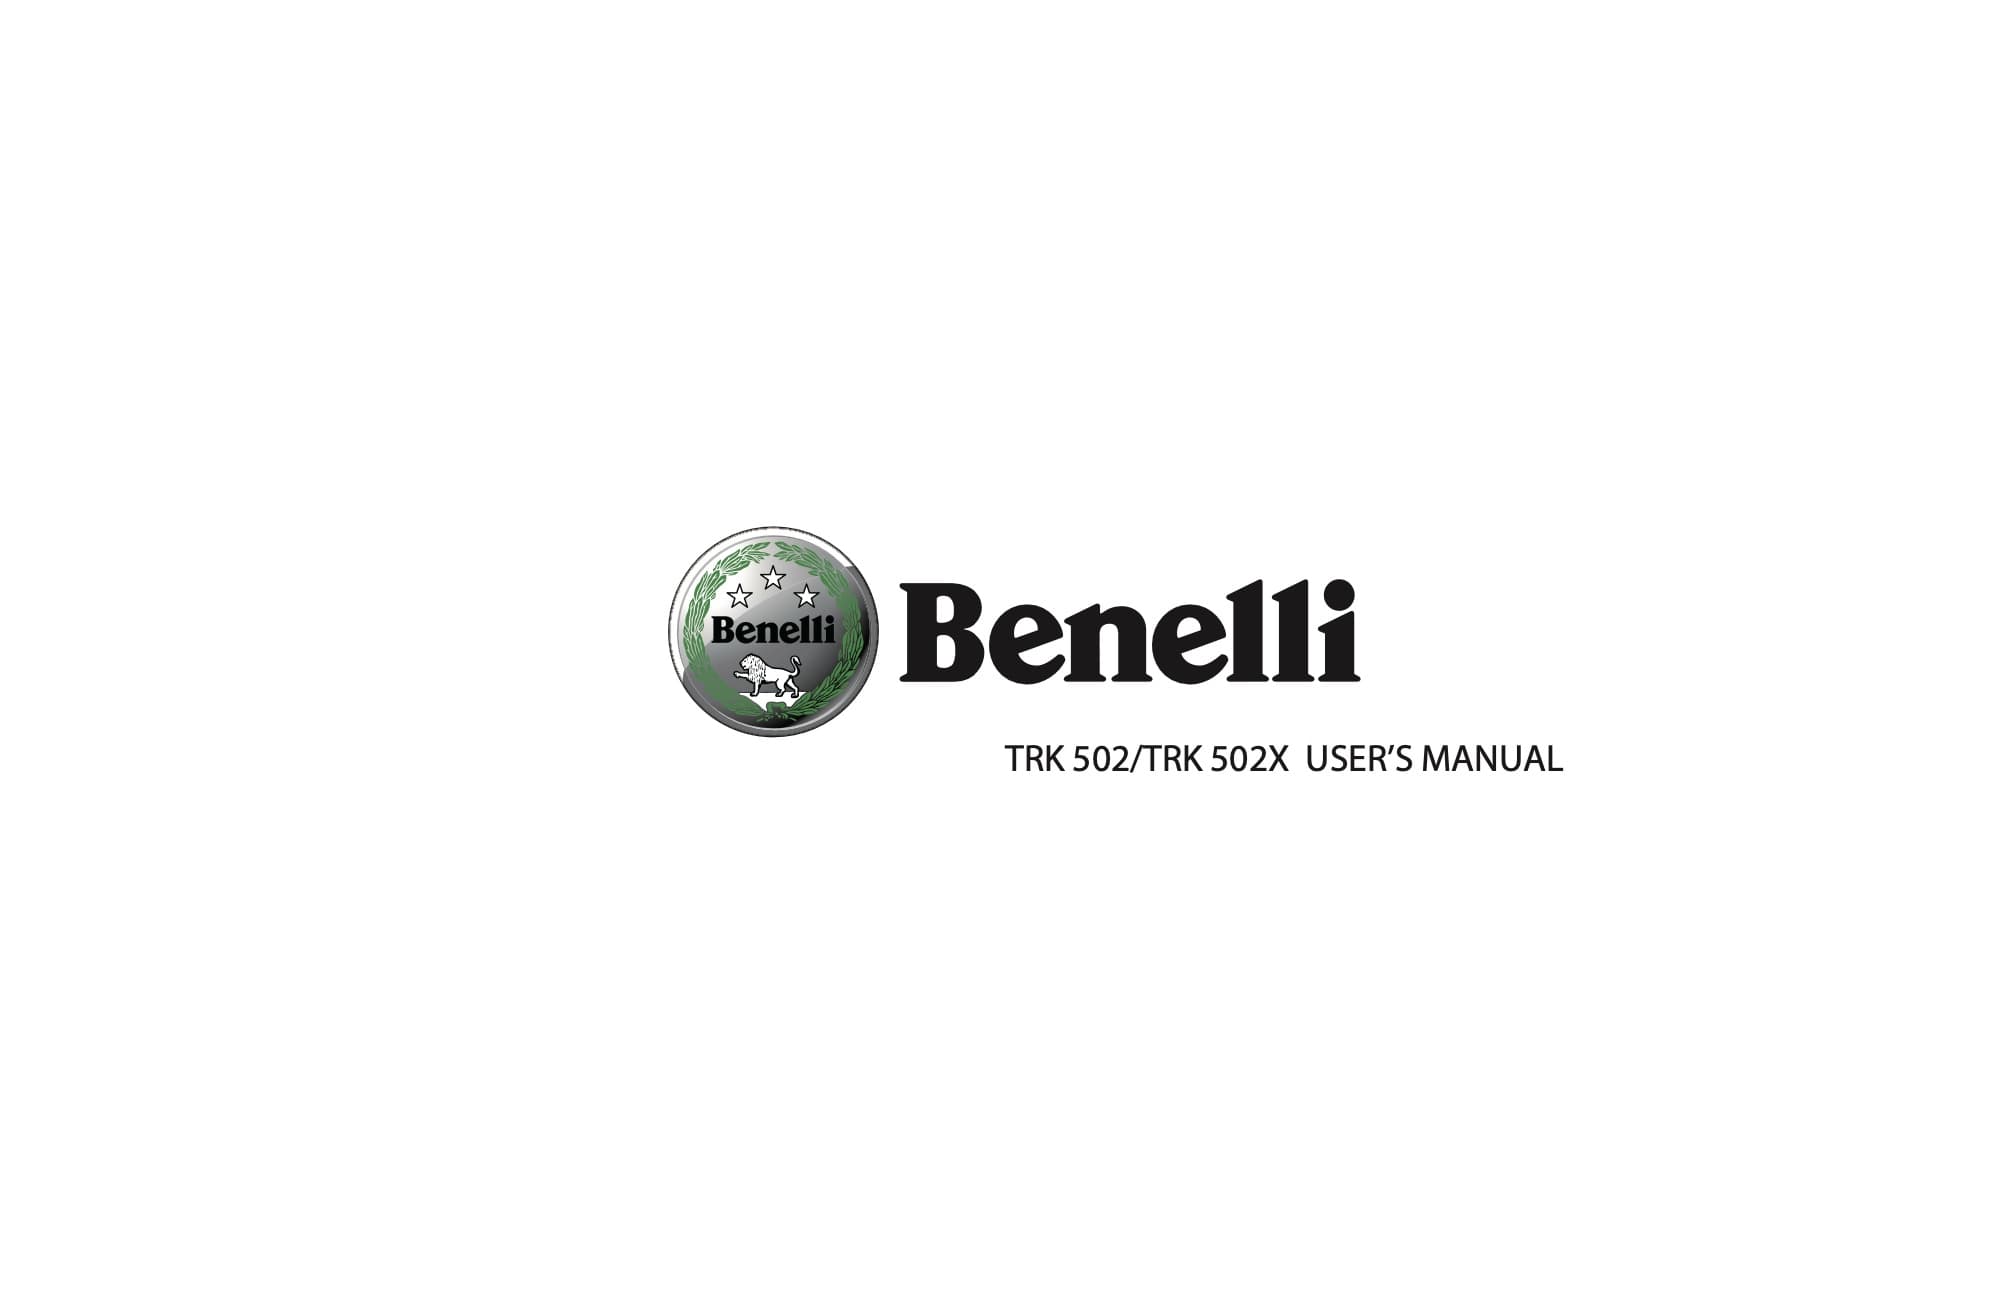 Benelli TRK 502 manual maintenance schedule screenshot cover